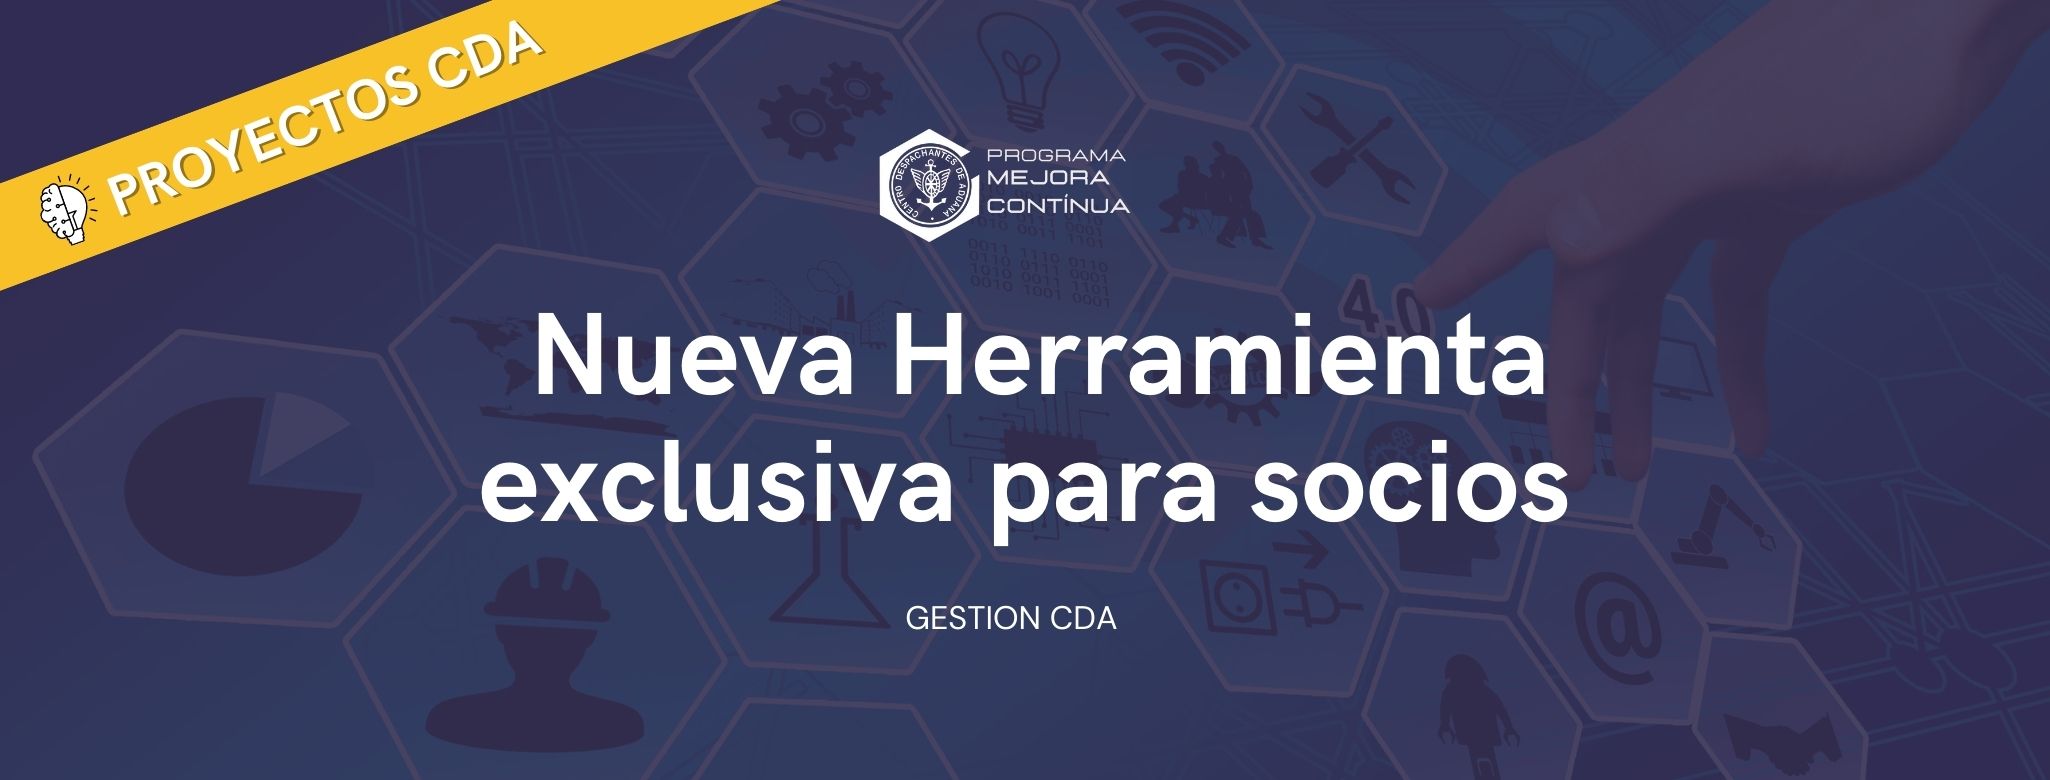 GESTIONES CDA: Nueva Herramienta exclusiva para socios